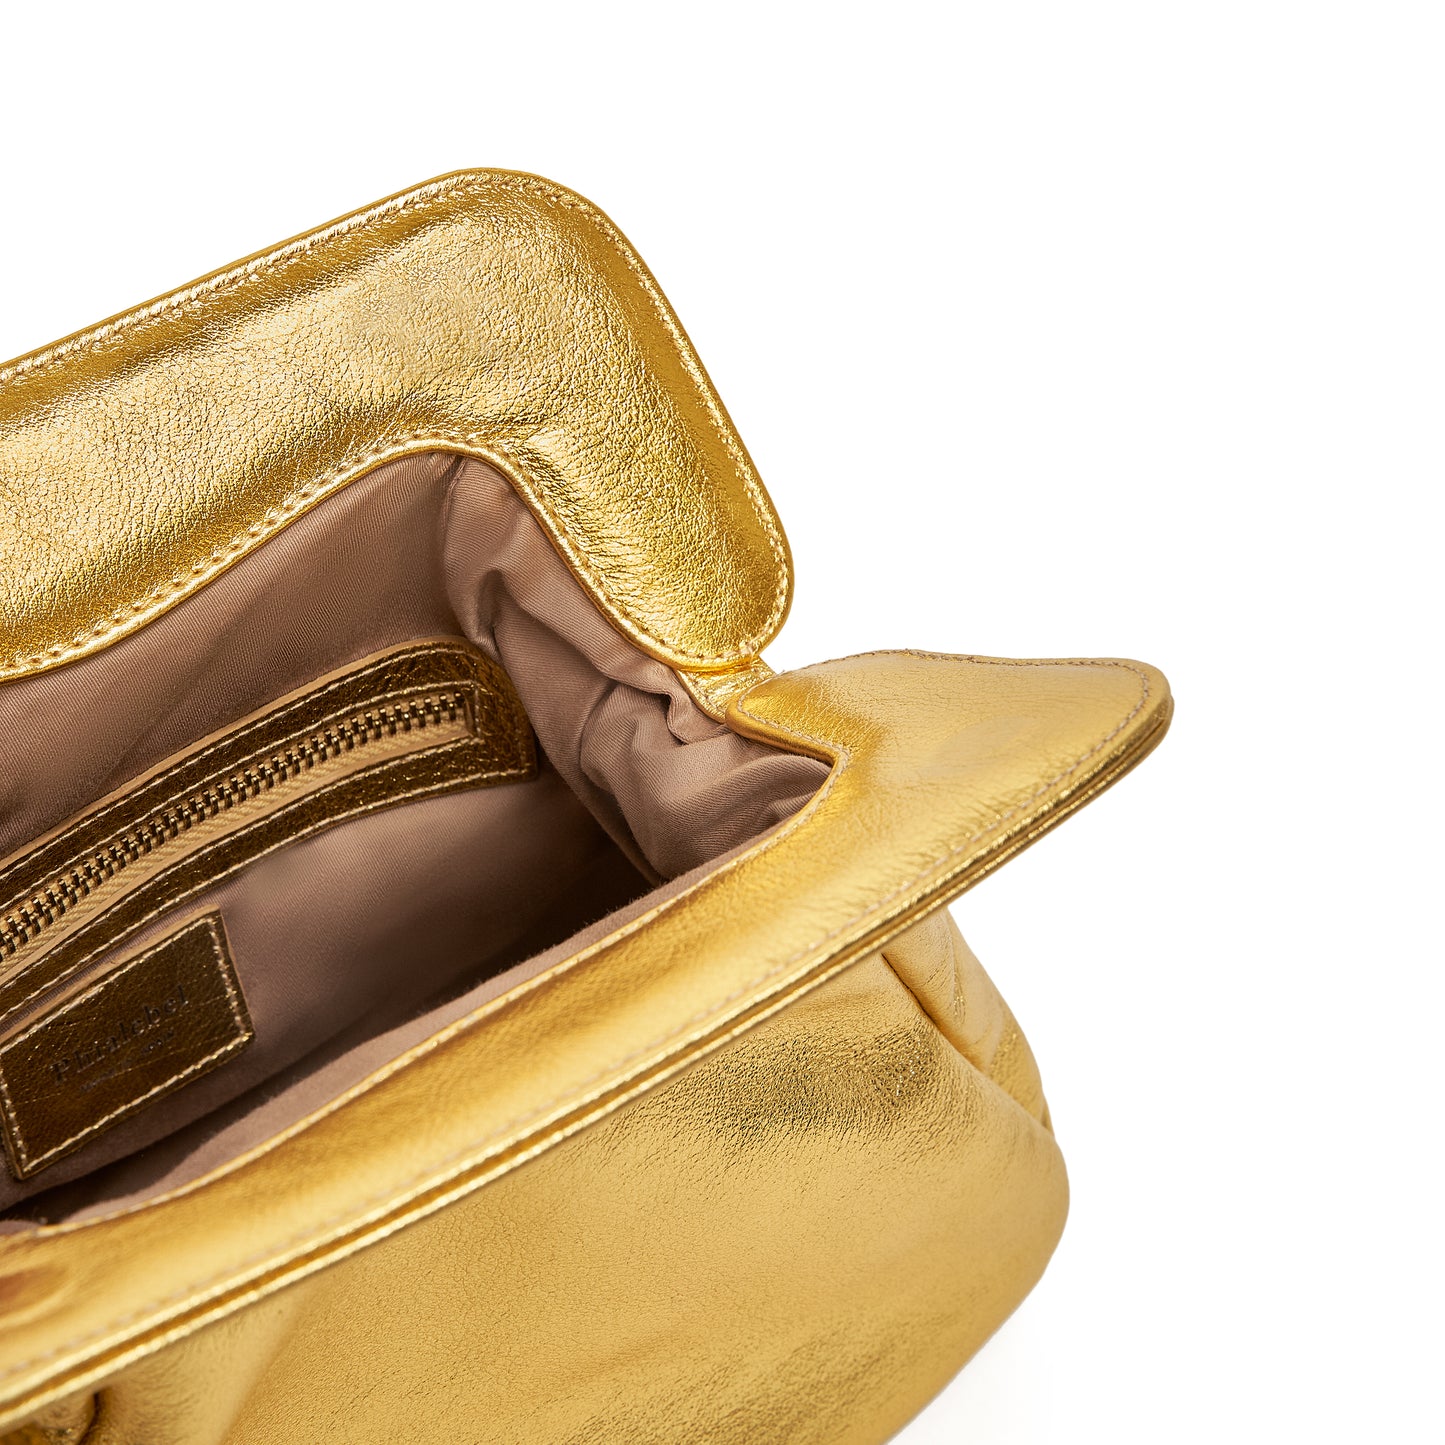 Detalle interior de nuestro bolso dorado metalizado